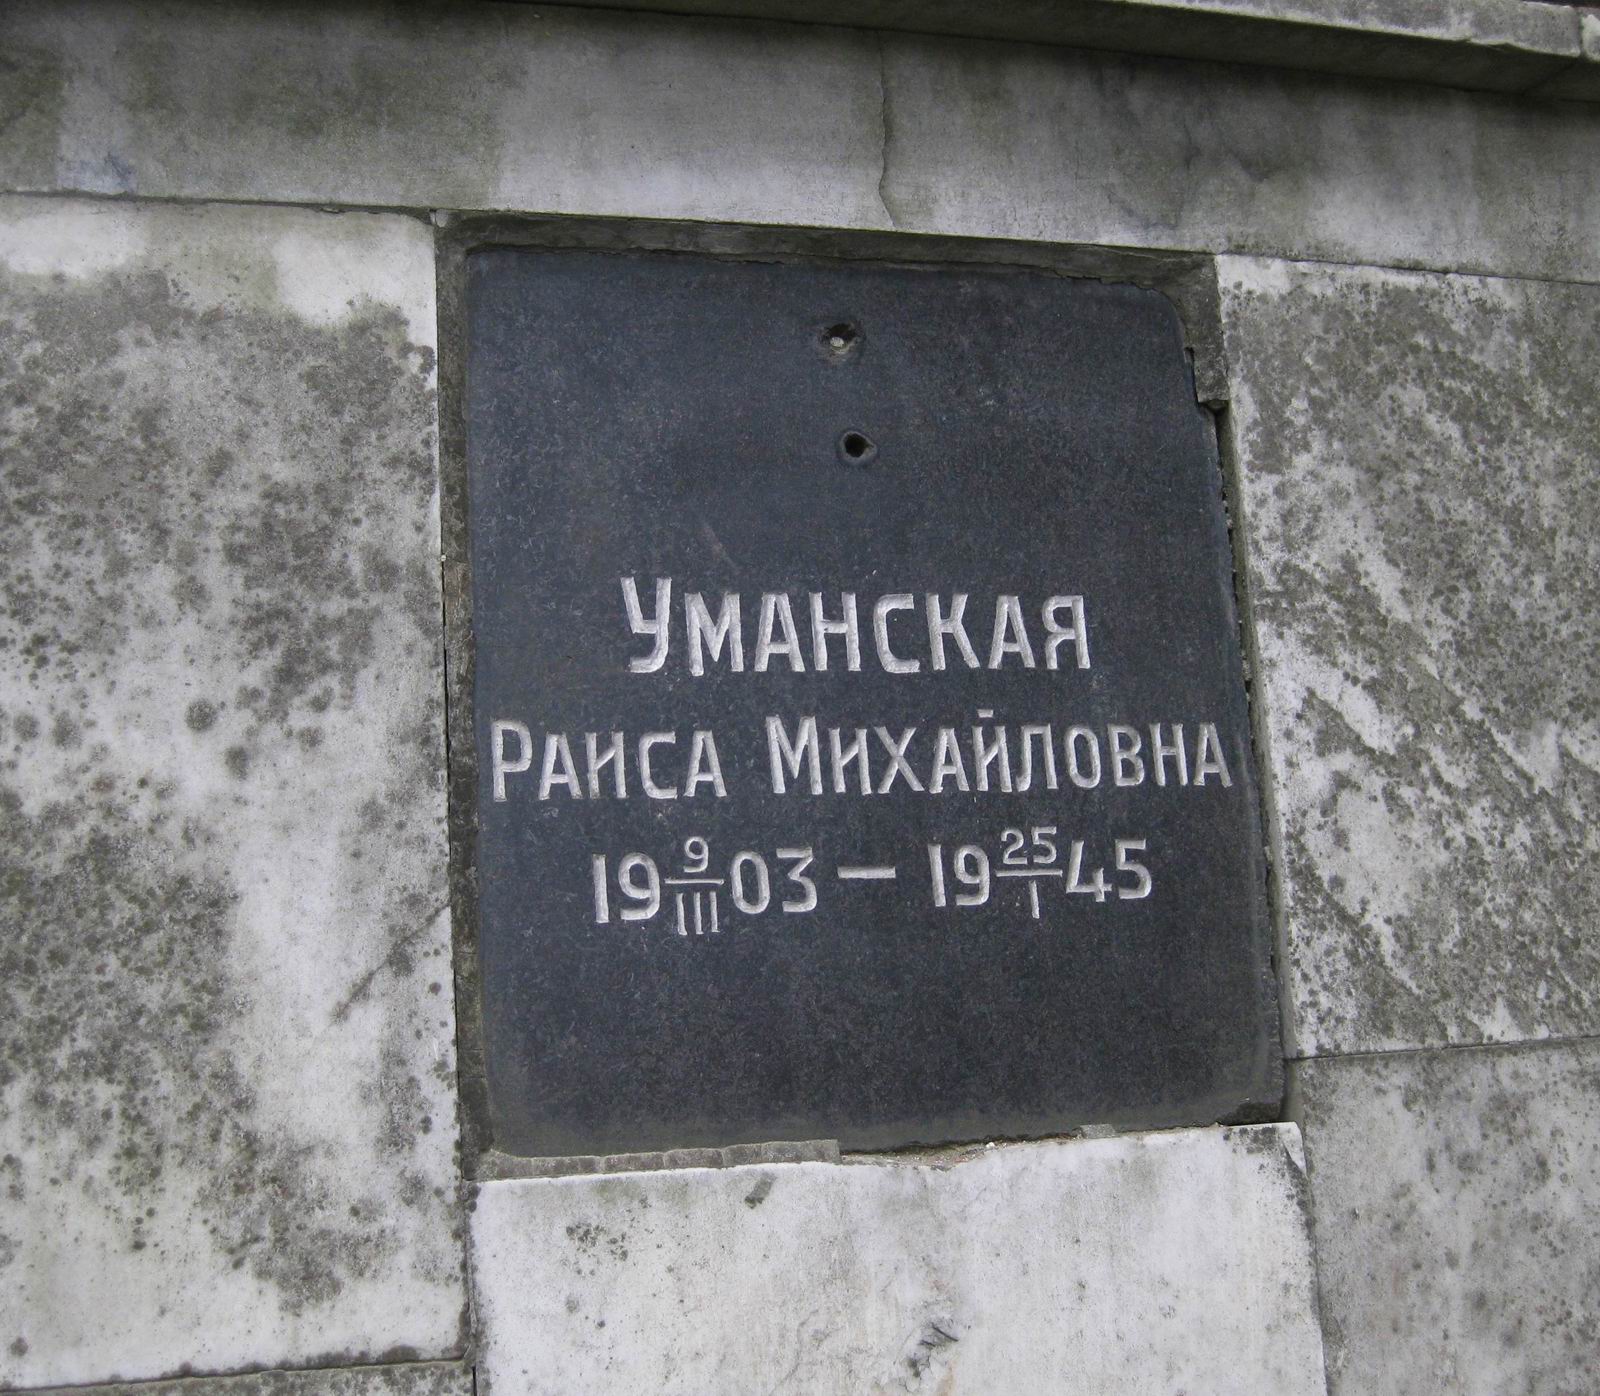 Плита на нише Уманской Р.М. (1903–1945), на Новодевичьем кладбище (колумбарий [1]–4–1). Нажмите левую кнопку мыши, чтобы увидеть общий вид.